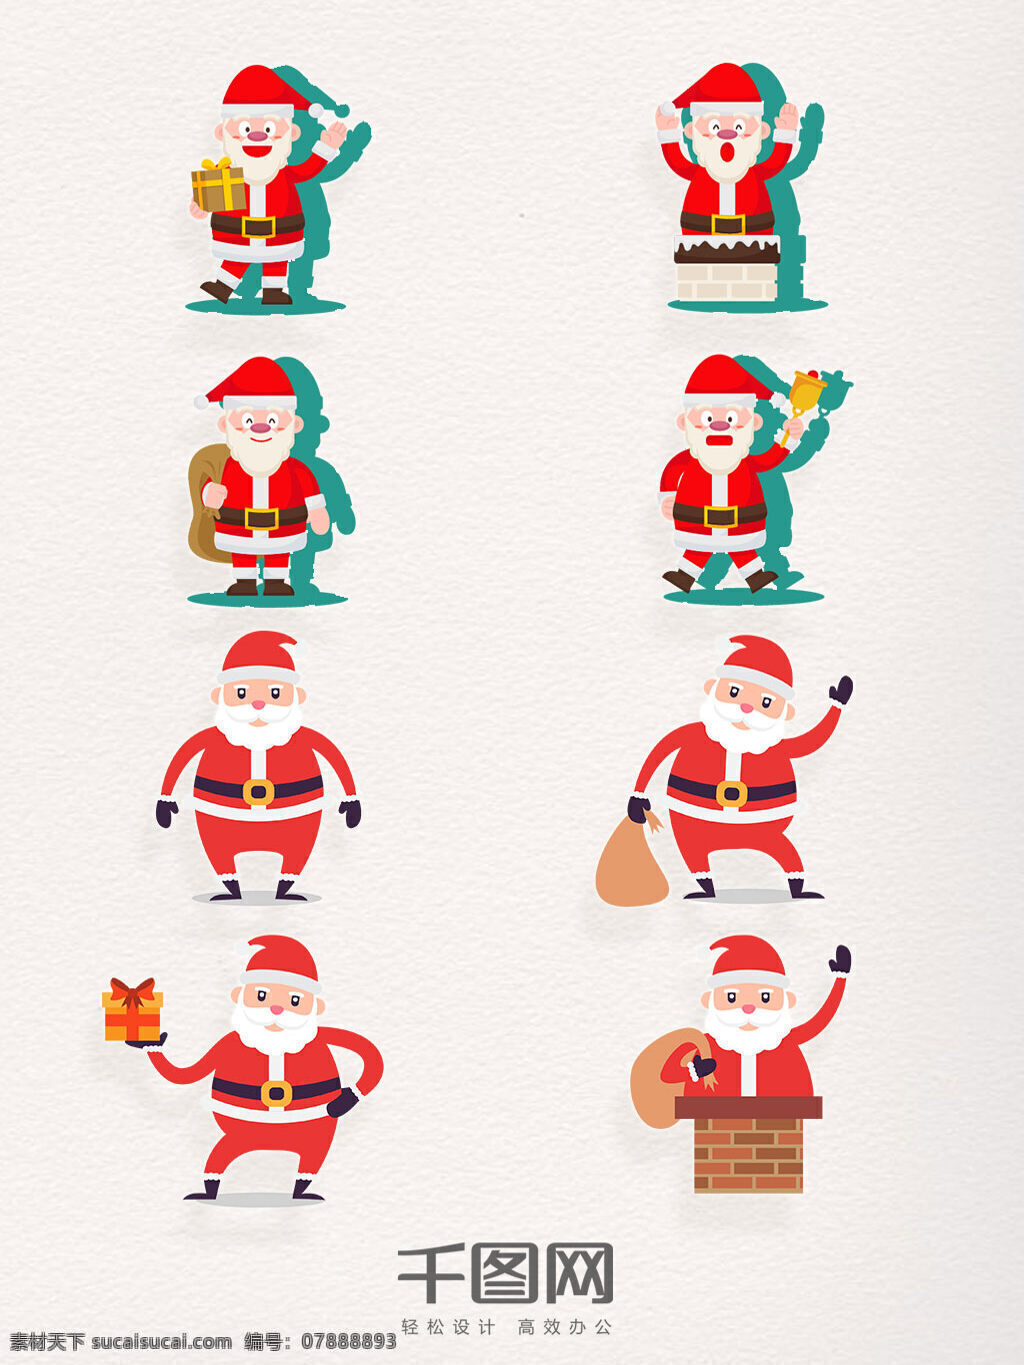 组 圣诞老人 卡通 形象设计 红色 圣诞 圣诞快乐 礼物 烟囱 平安夜